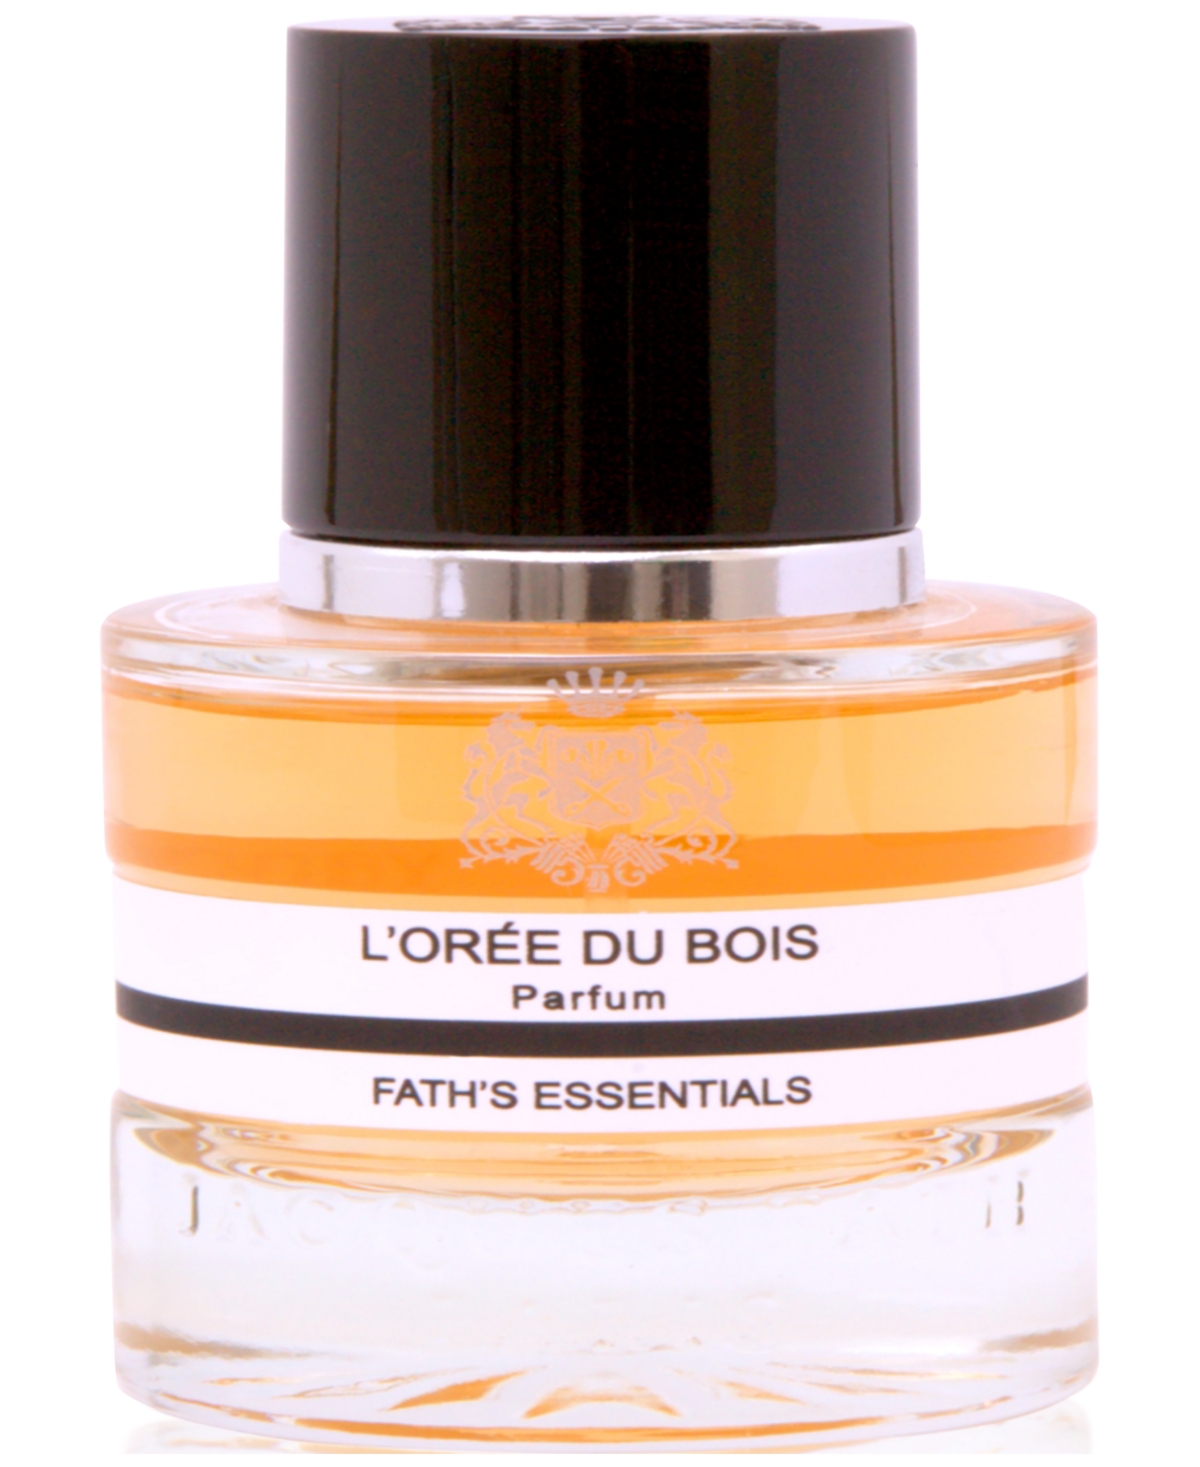 L'Oree du Bois Parfum, 1.7 oz.